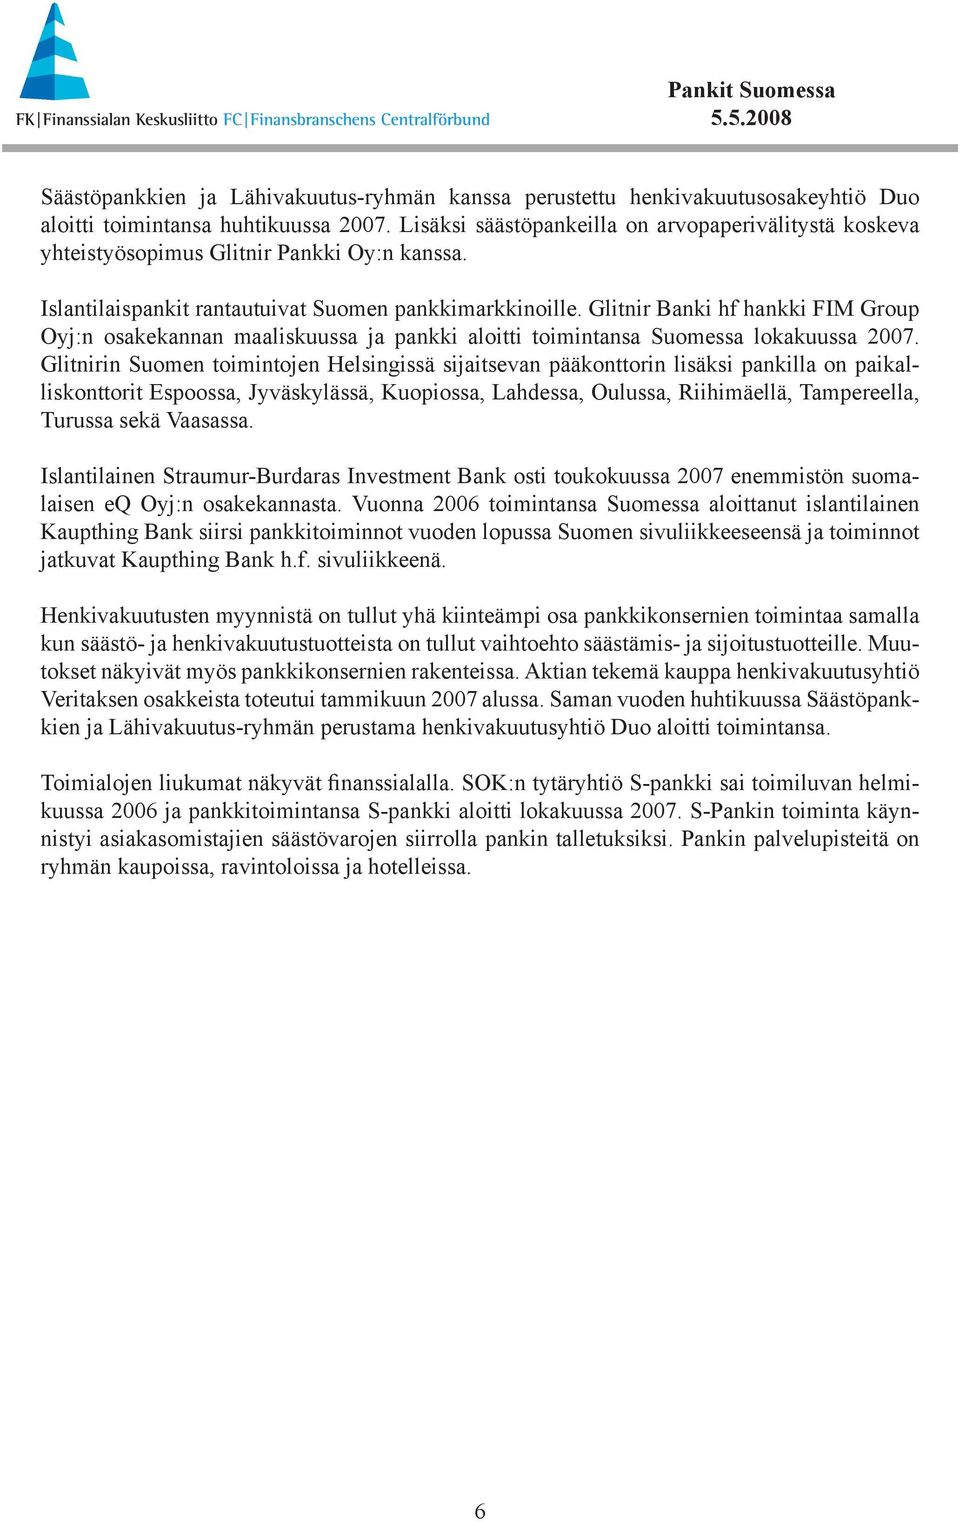 Glitnir Banki hf hankki FIM Group Oyj:n osakekannan maaliskuussa ja pankki aloitti toimintansa Suomessa lokakuussa 27.